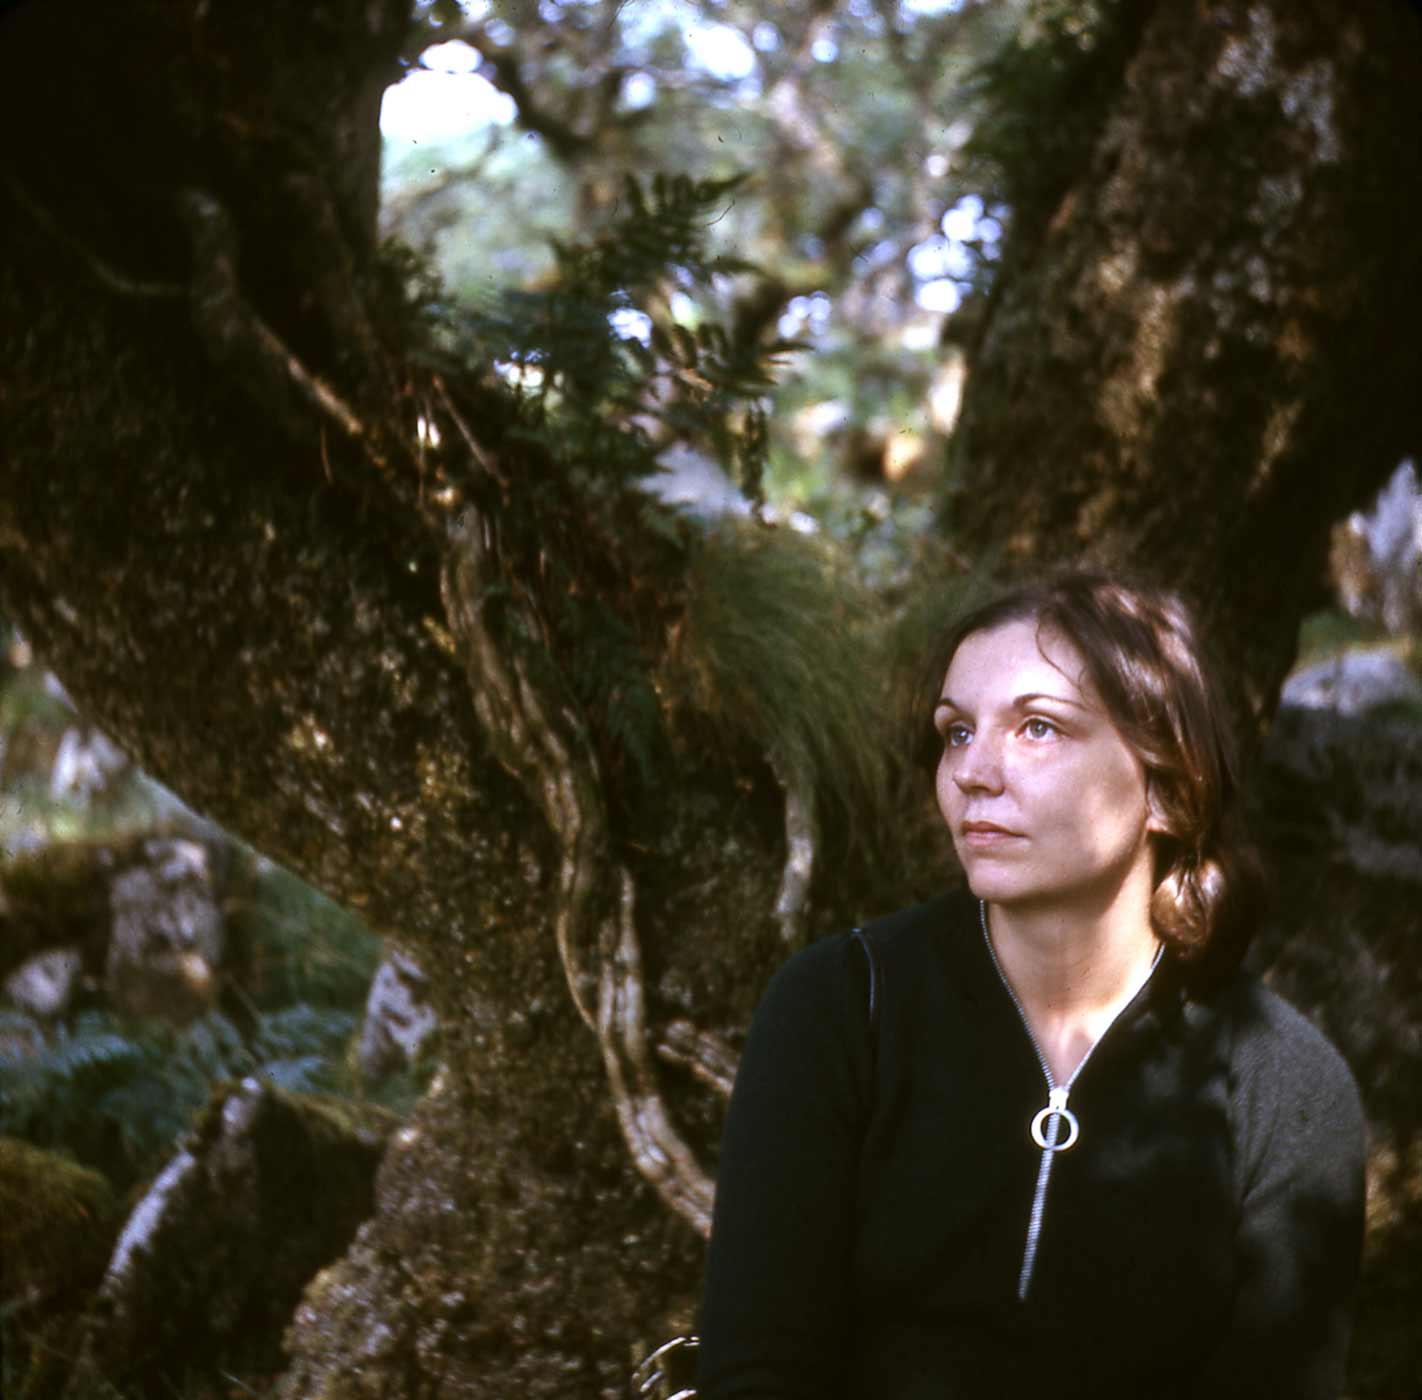 Nancy Holt in Wistman's Wood, UK. 1969.